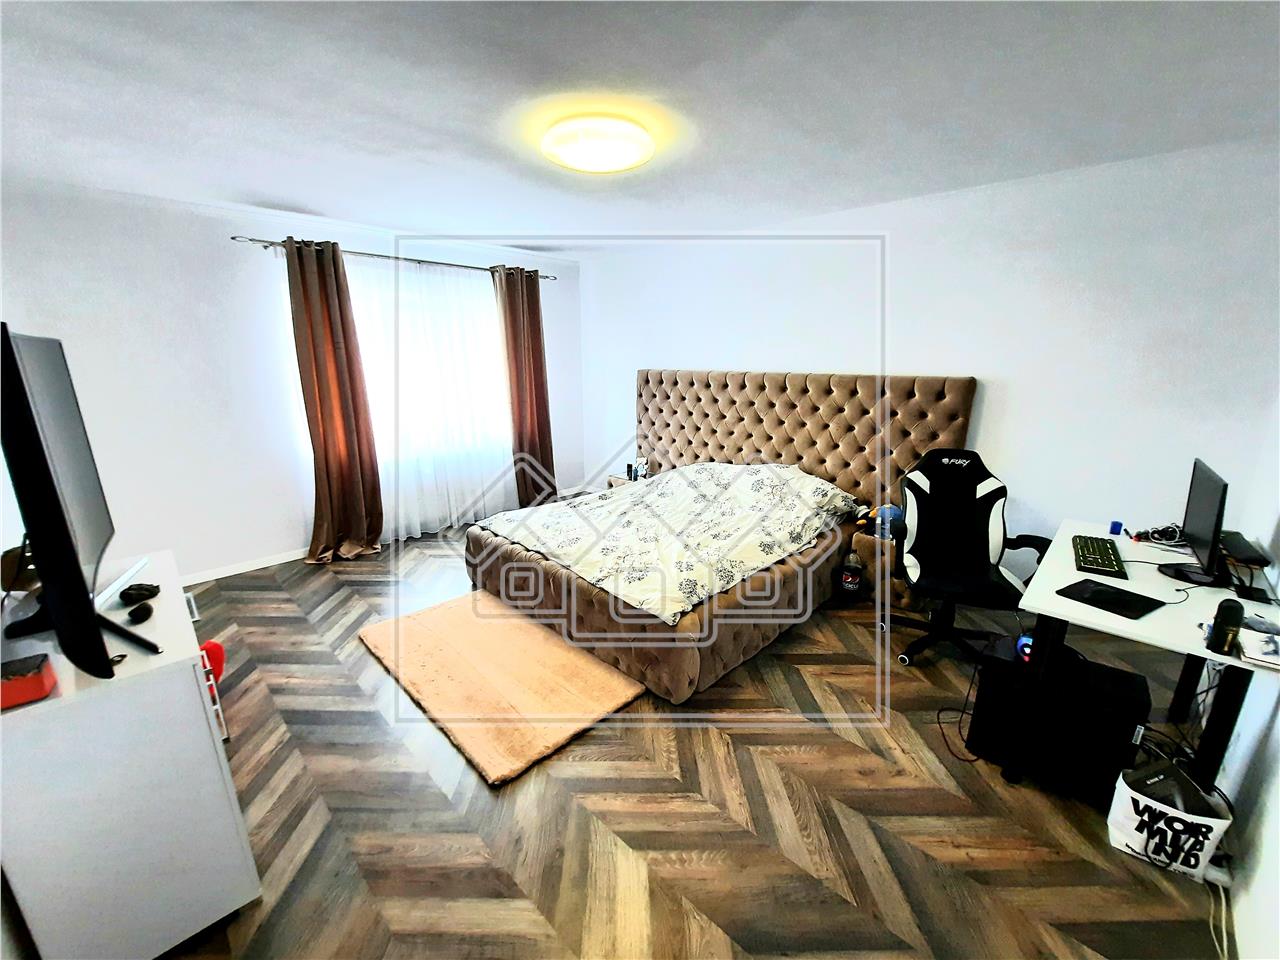 Casa de vanzare in Alba Iulia - tip duplex - 194 mp - zona Micesti